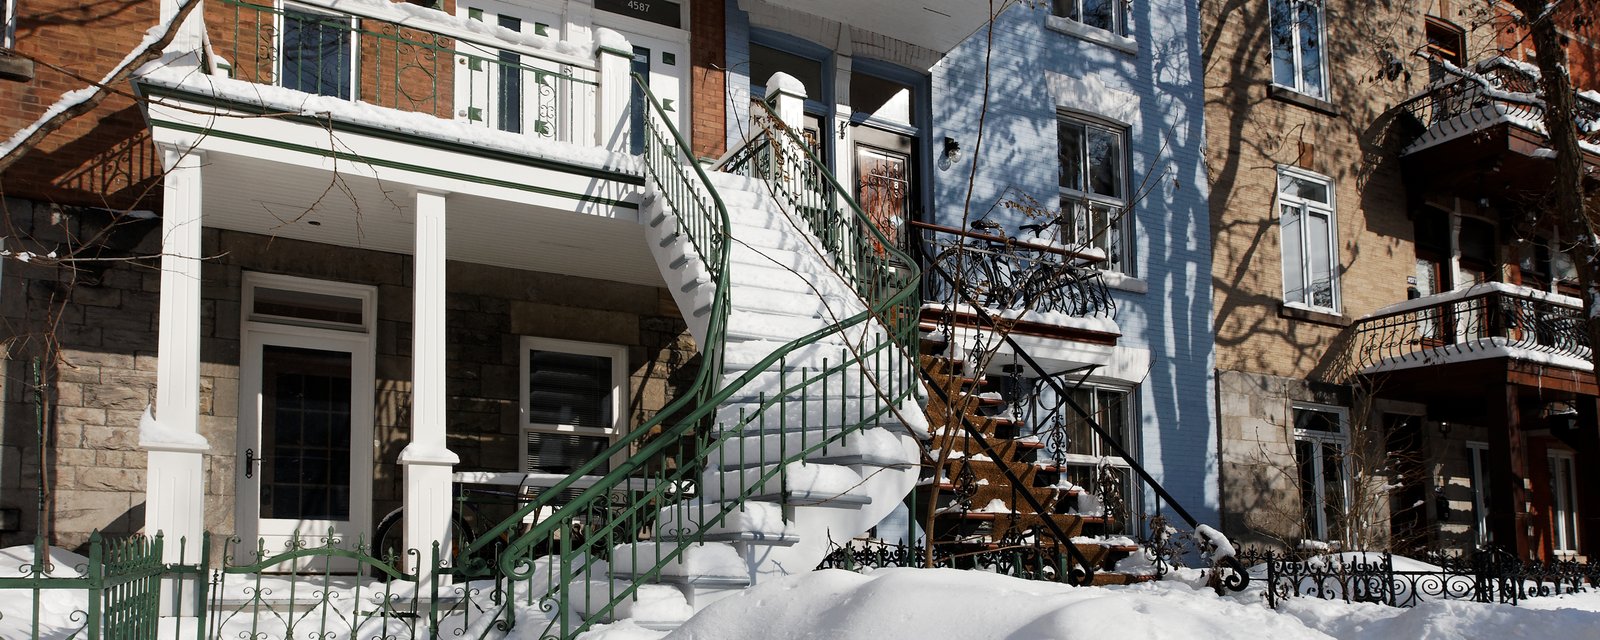 Un homme âgé meurt après avoir été évincé de son appartement à Montréal